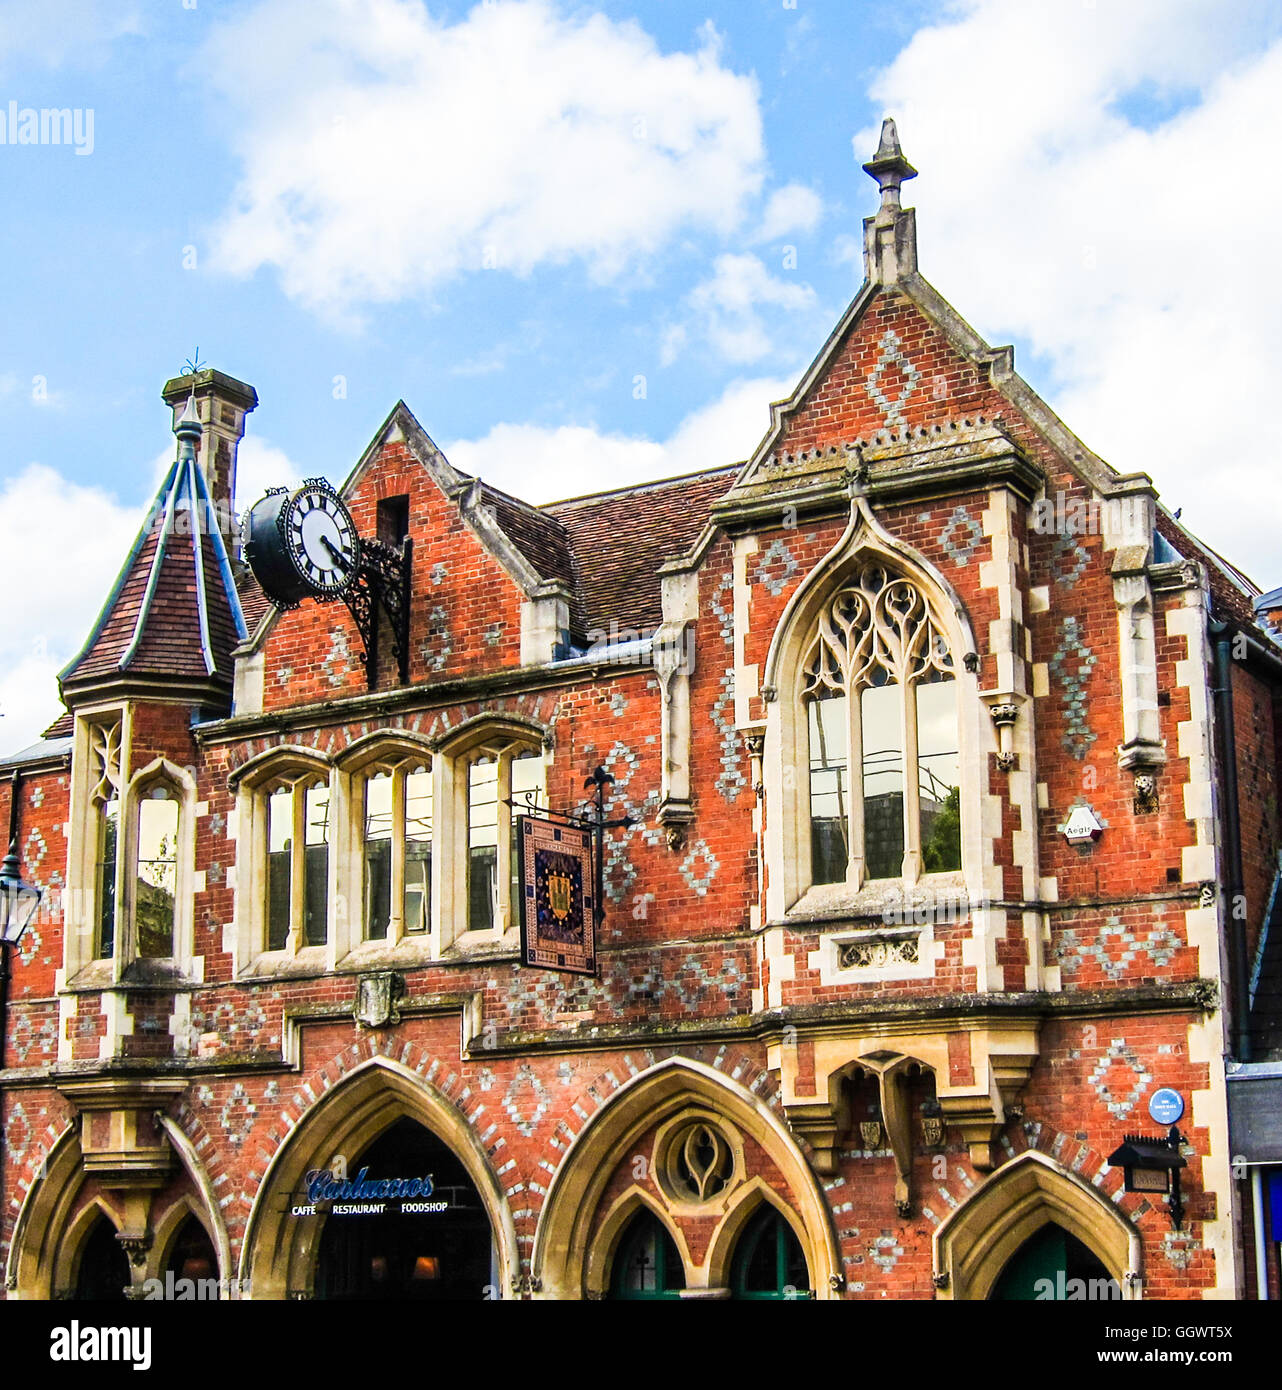 Viktorianischen Stil Berkhamsted Altstädter Rathaus, erbaut 1859 mit einer markanten gotischen Fassade - UK Stockfoto